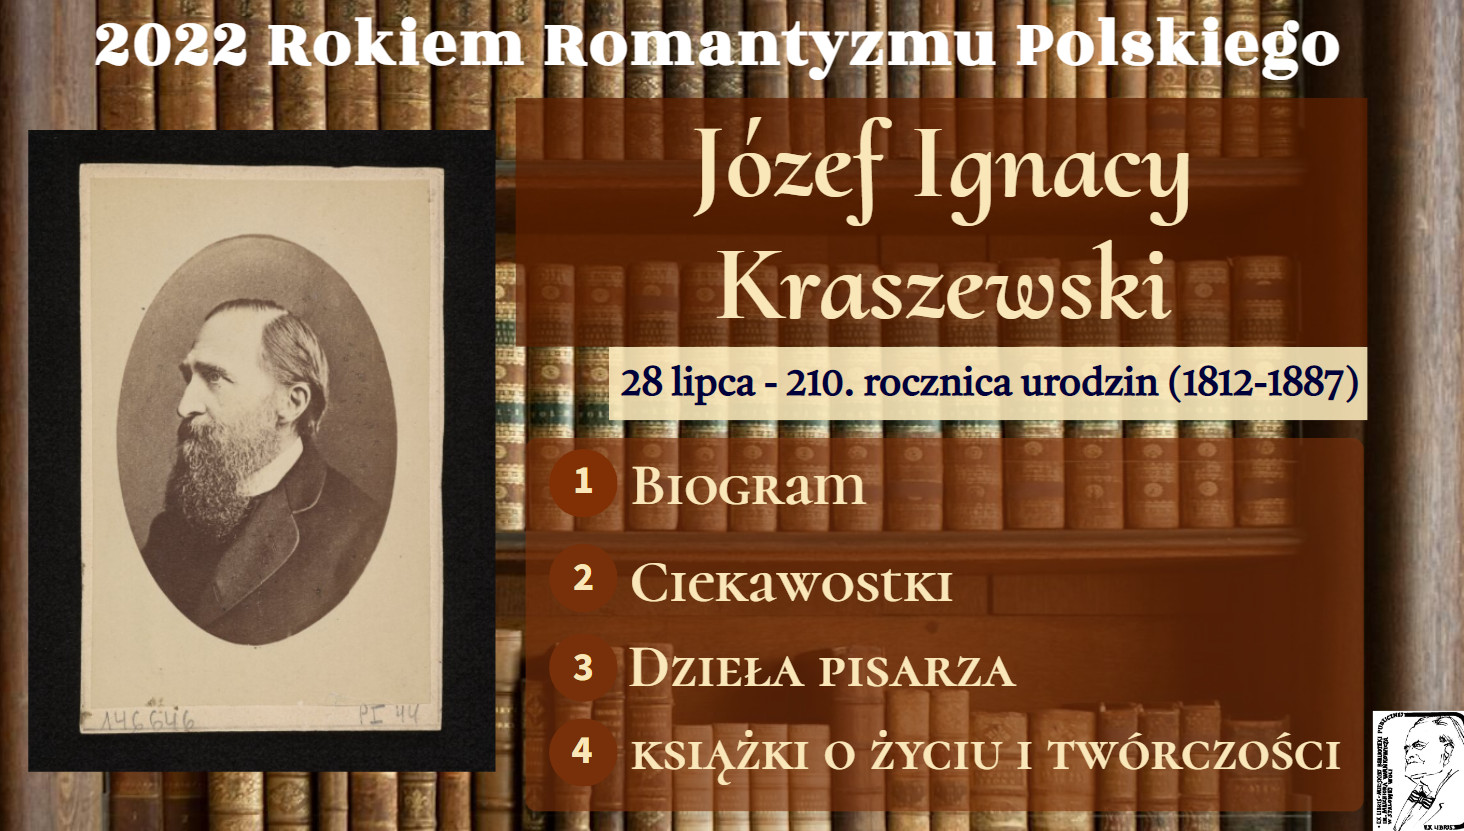 Józef Ignacy Kraszewski „tytan pracy” – 2022 Rokiem Romantyzmu Polskiego